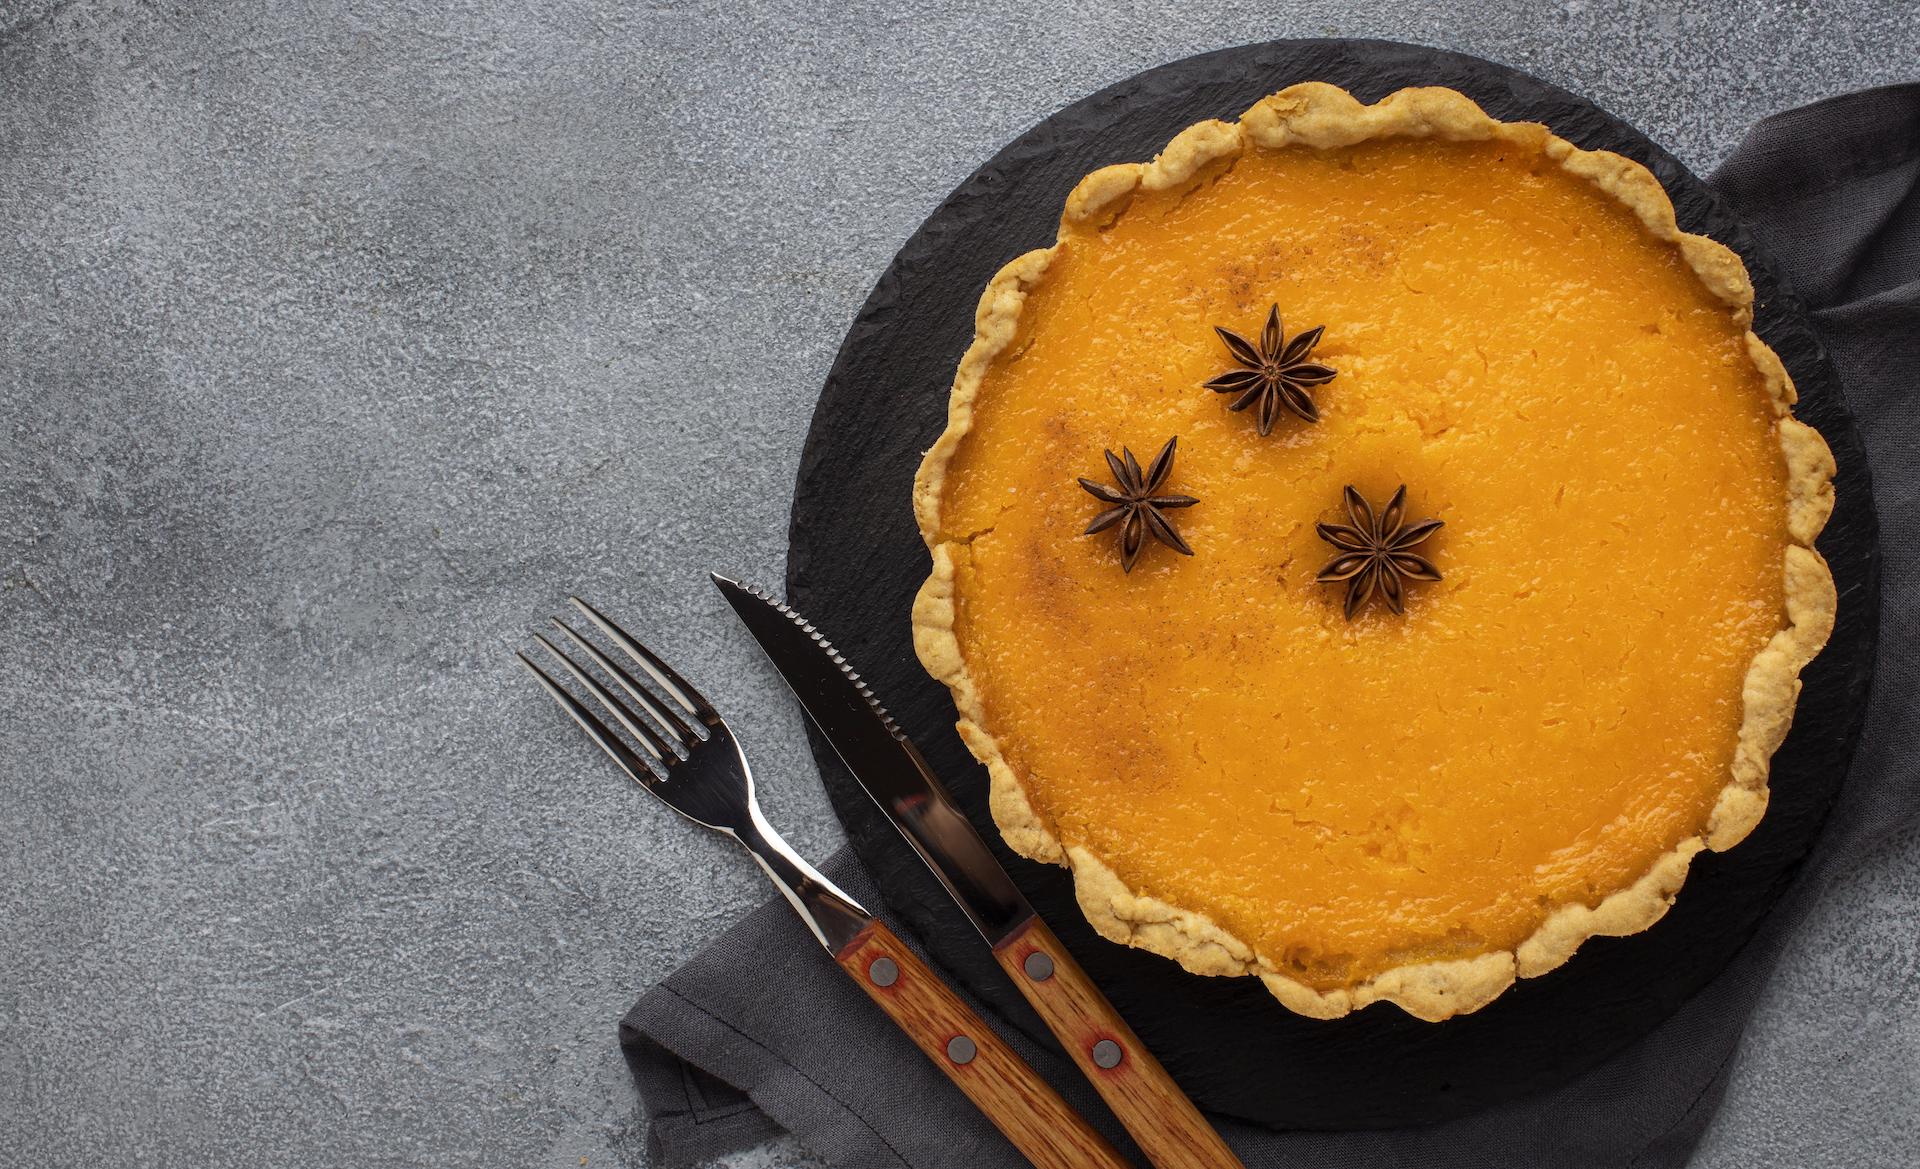 Que tal um passeio gastronômico pela culinária americana? A Torta de Abóbora (Pumpkin Pie) é um clássico!/GB Imagem 